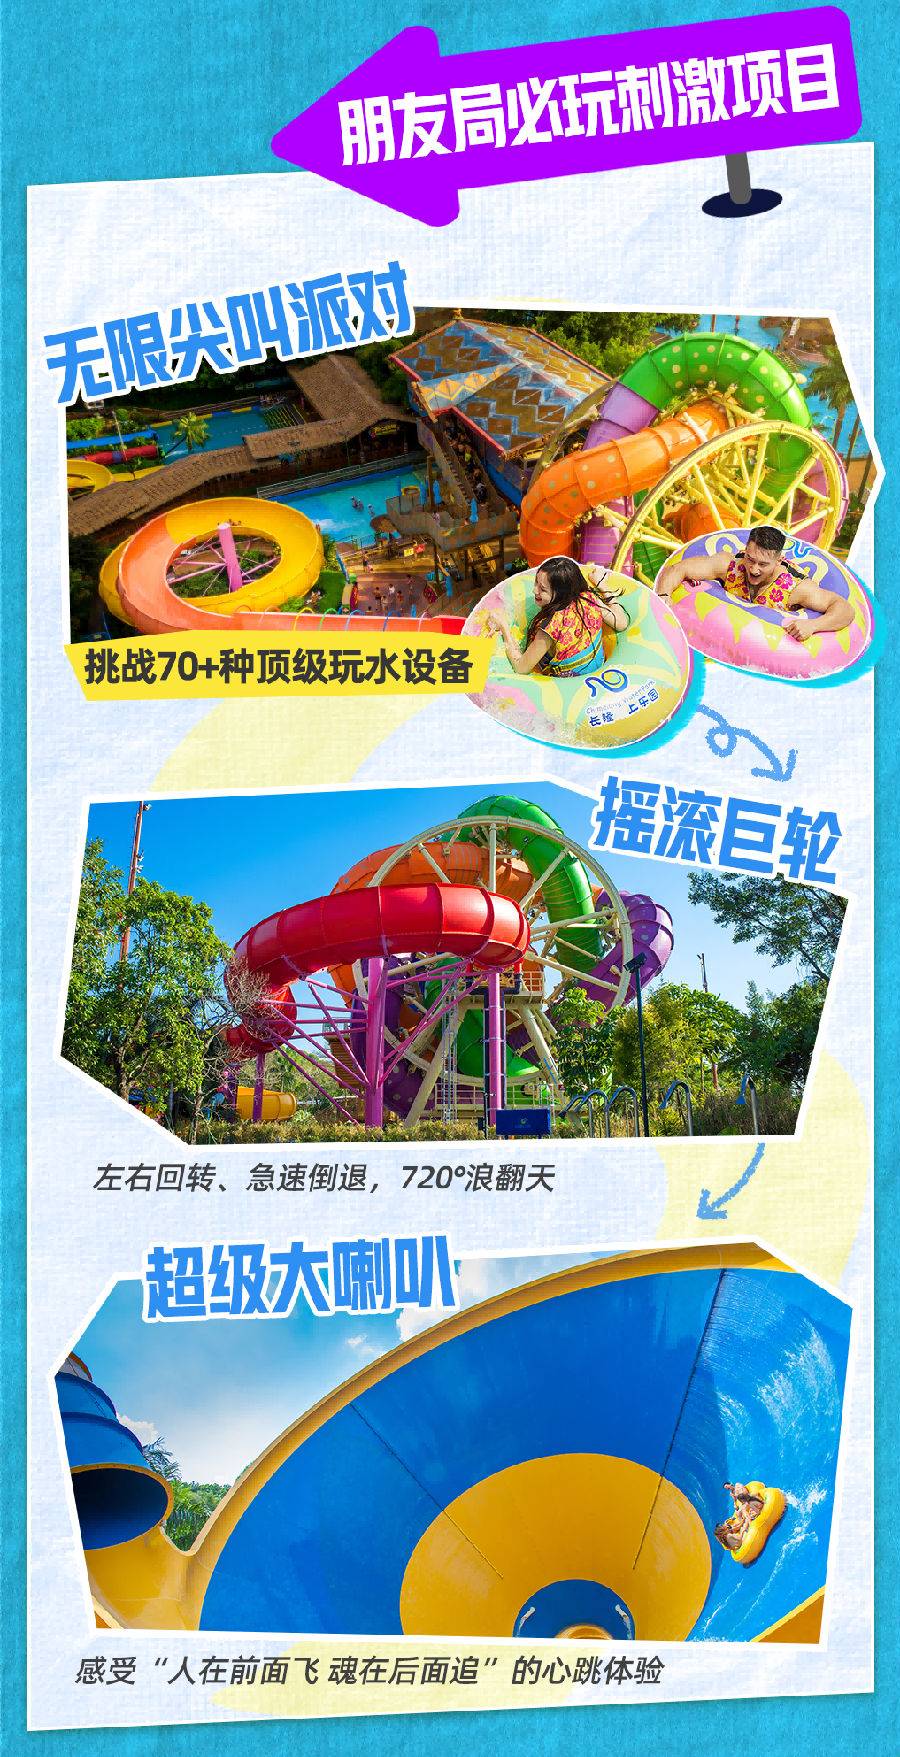 节假日周末不加收【9-10月】广州长隆水上乐园夜场标准票（17:00后入园）可免费携带1名1.5米以下儿童入园游玩